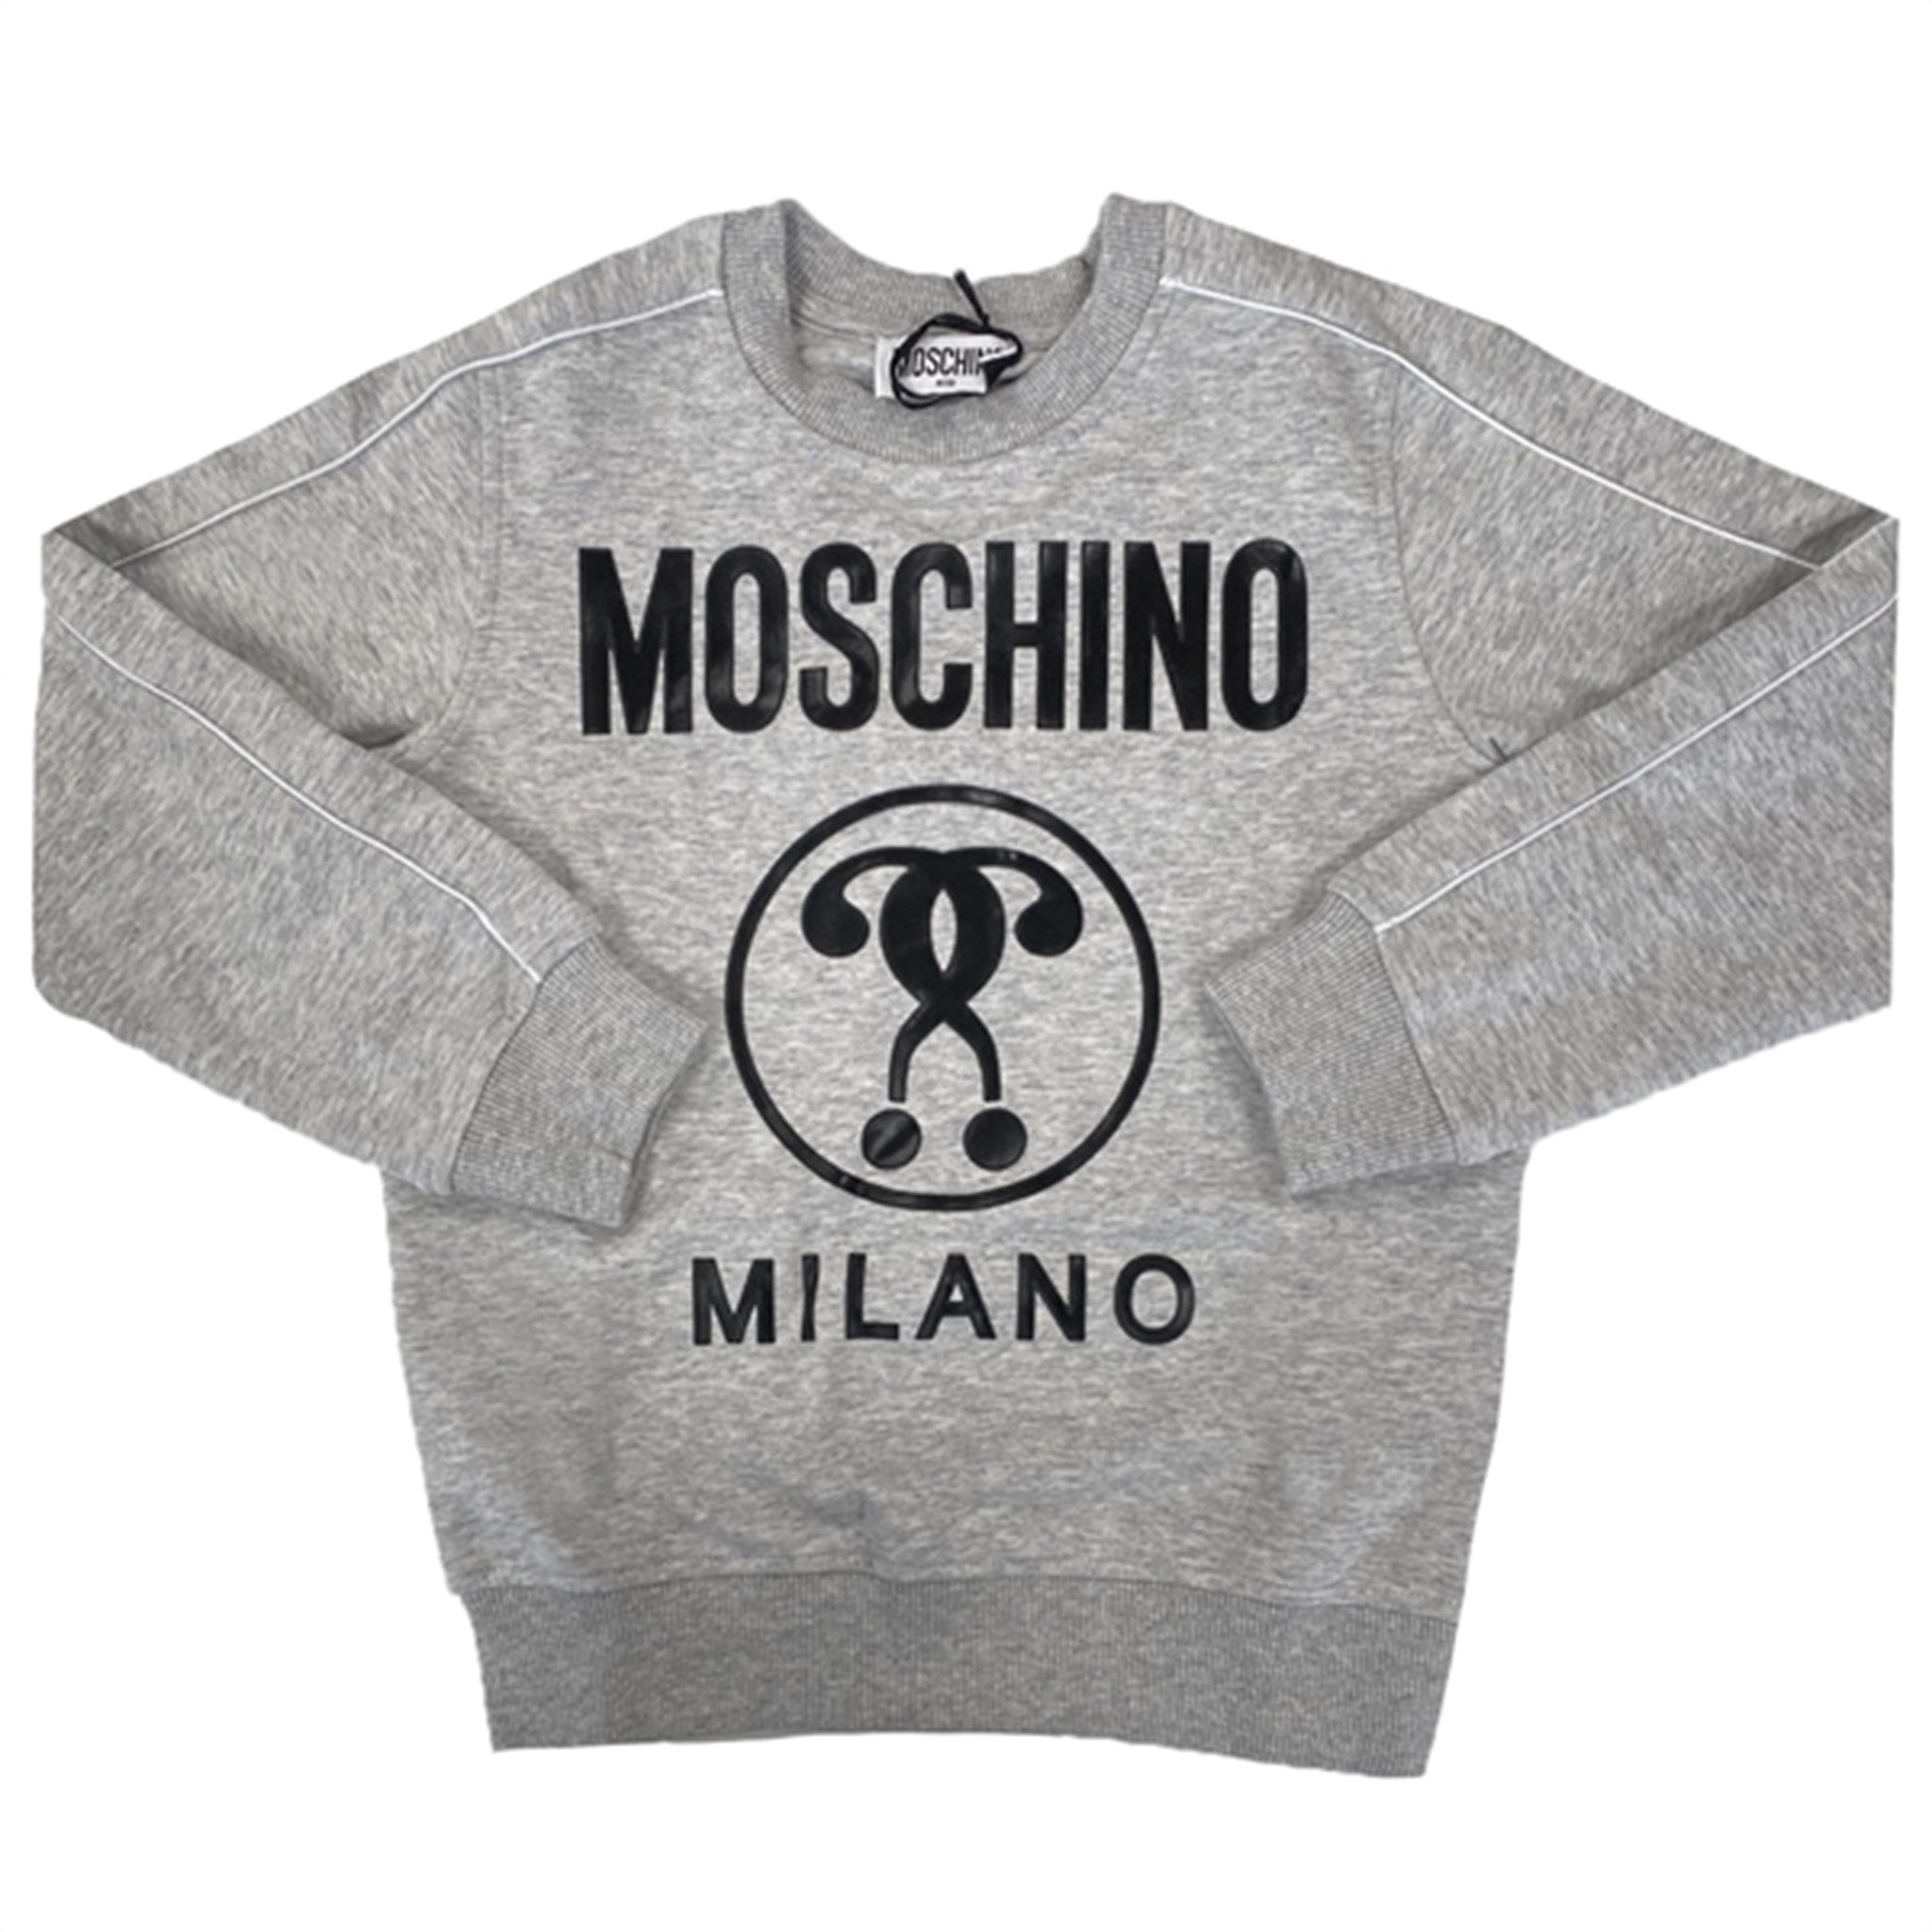 Moschino Grigio Chiaro Sweatshirt